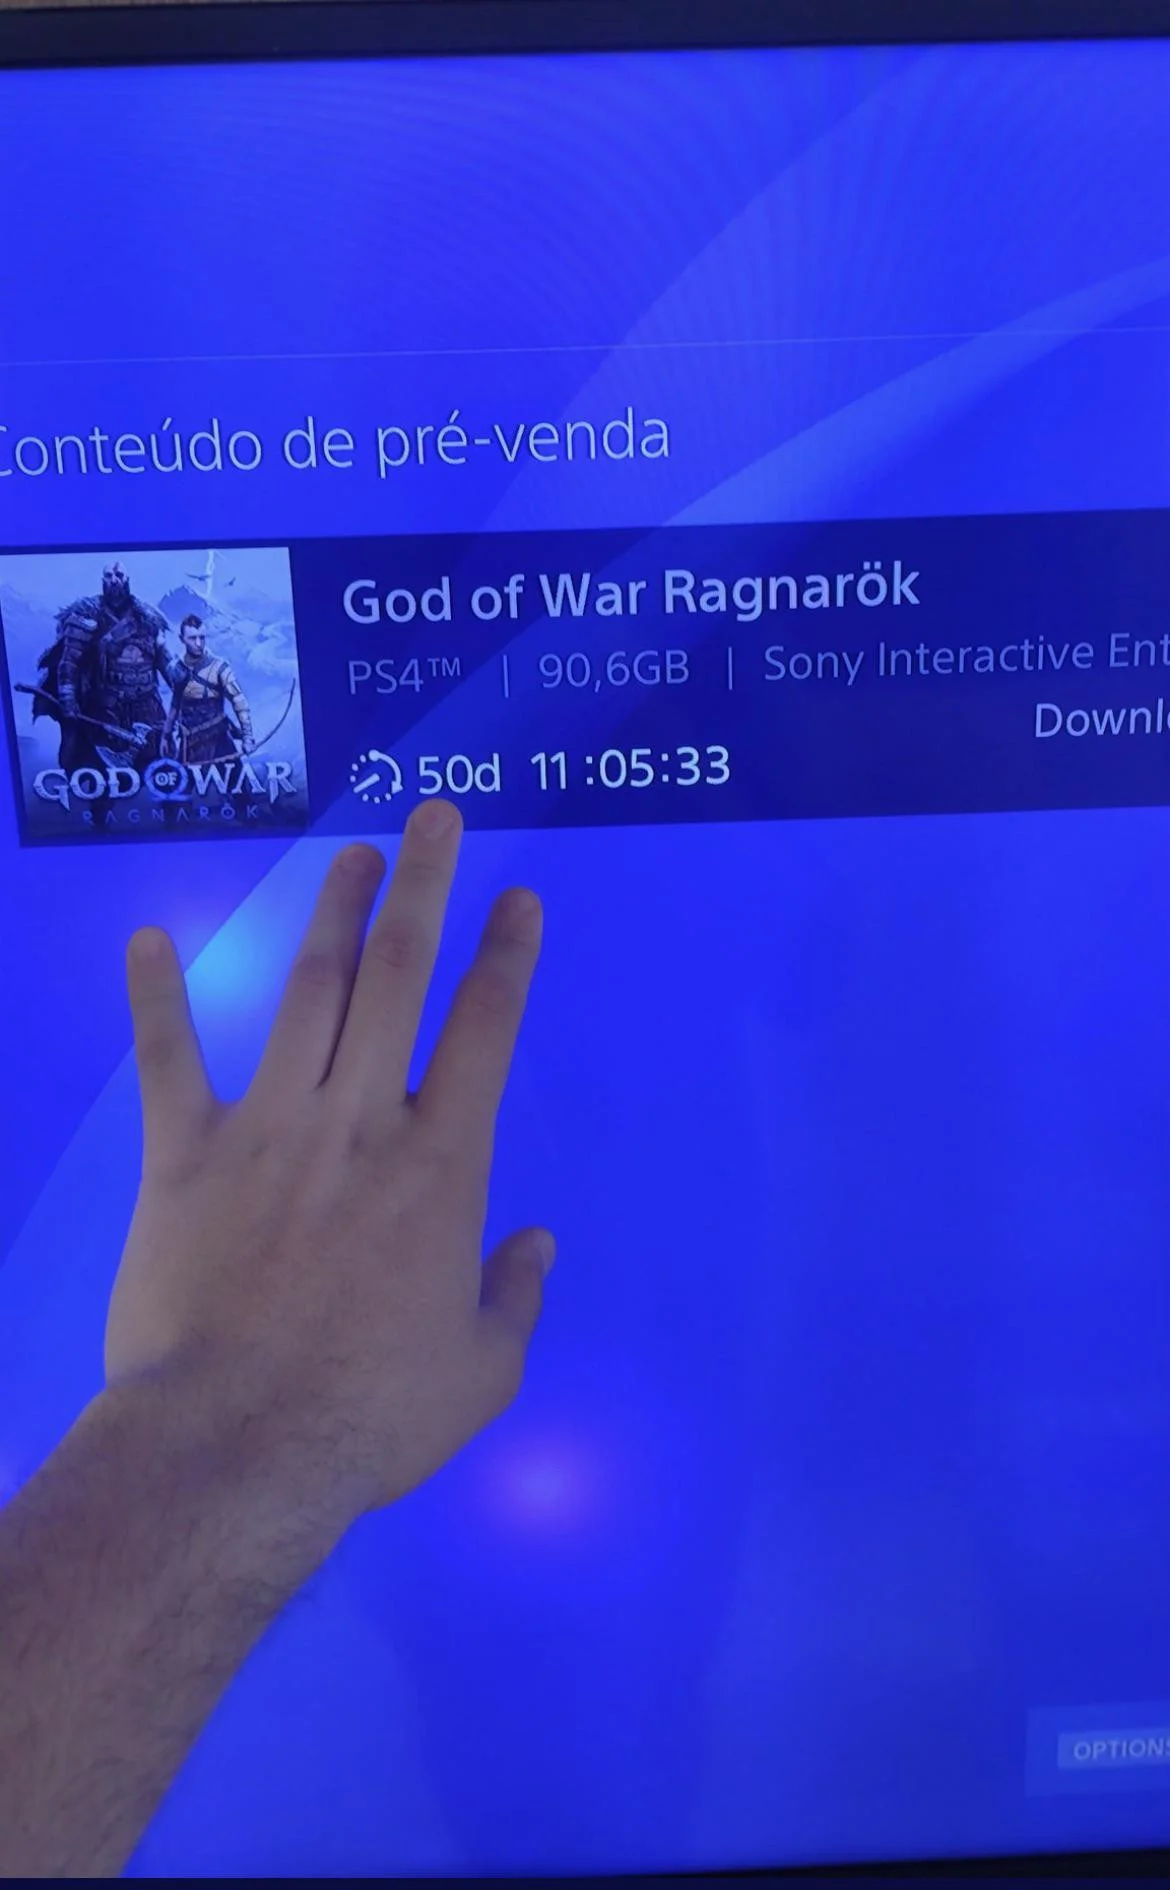 Размер файла God of War: Ragnarok на PS4 составил больше 90 ГБ - фото 1